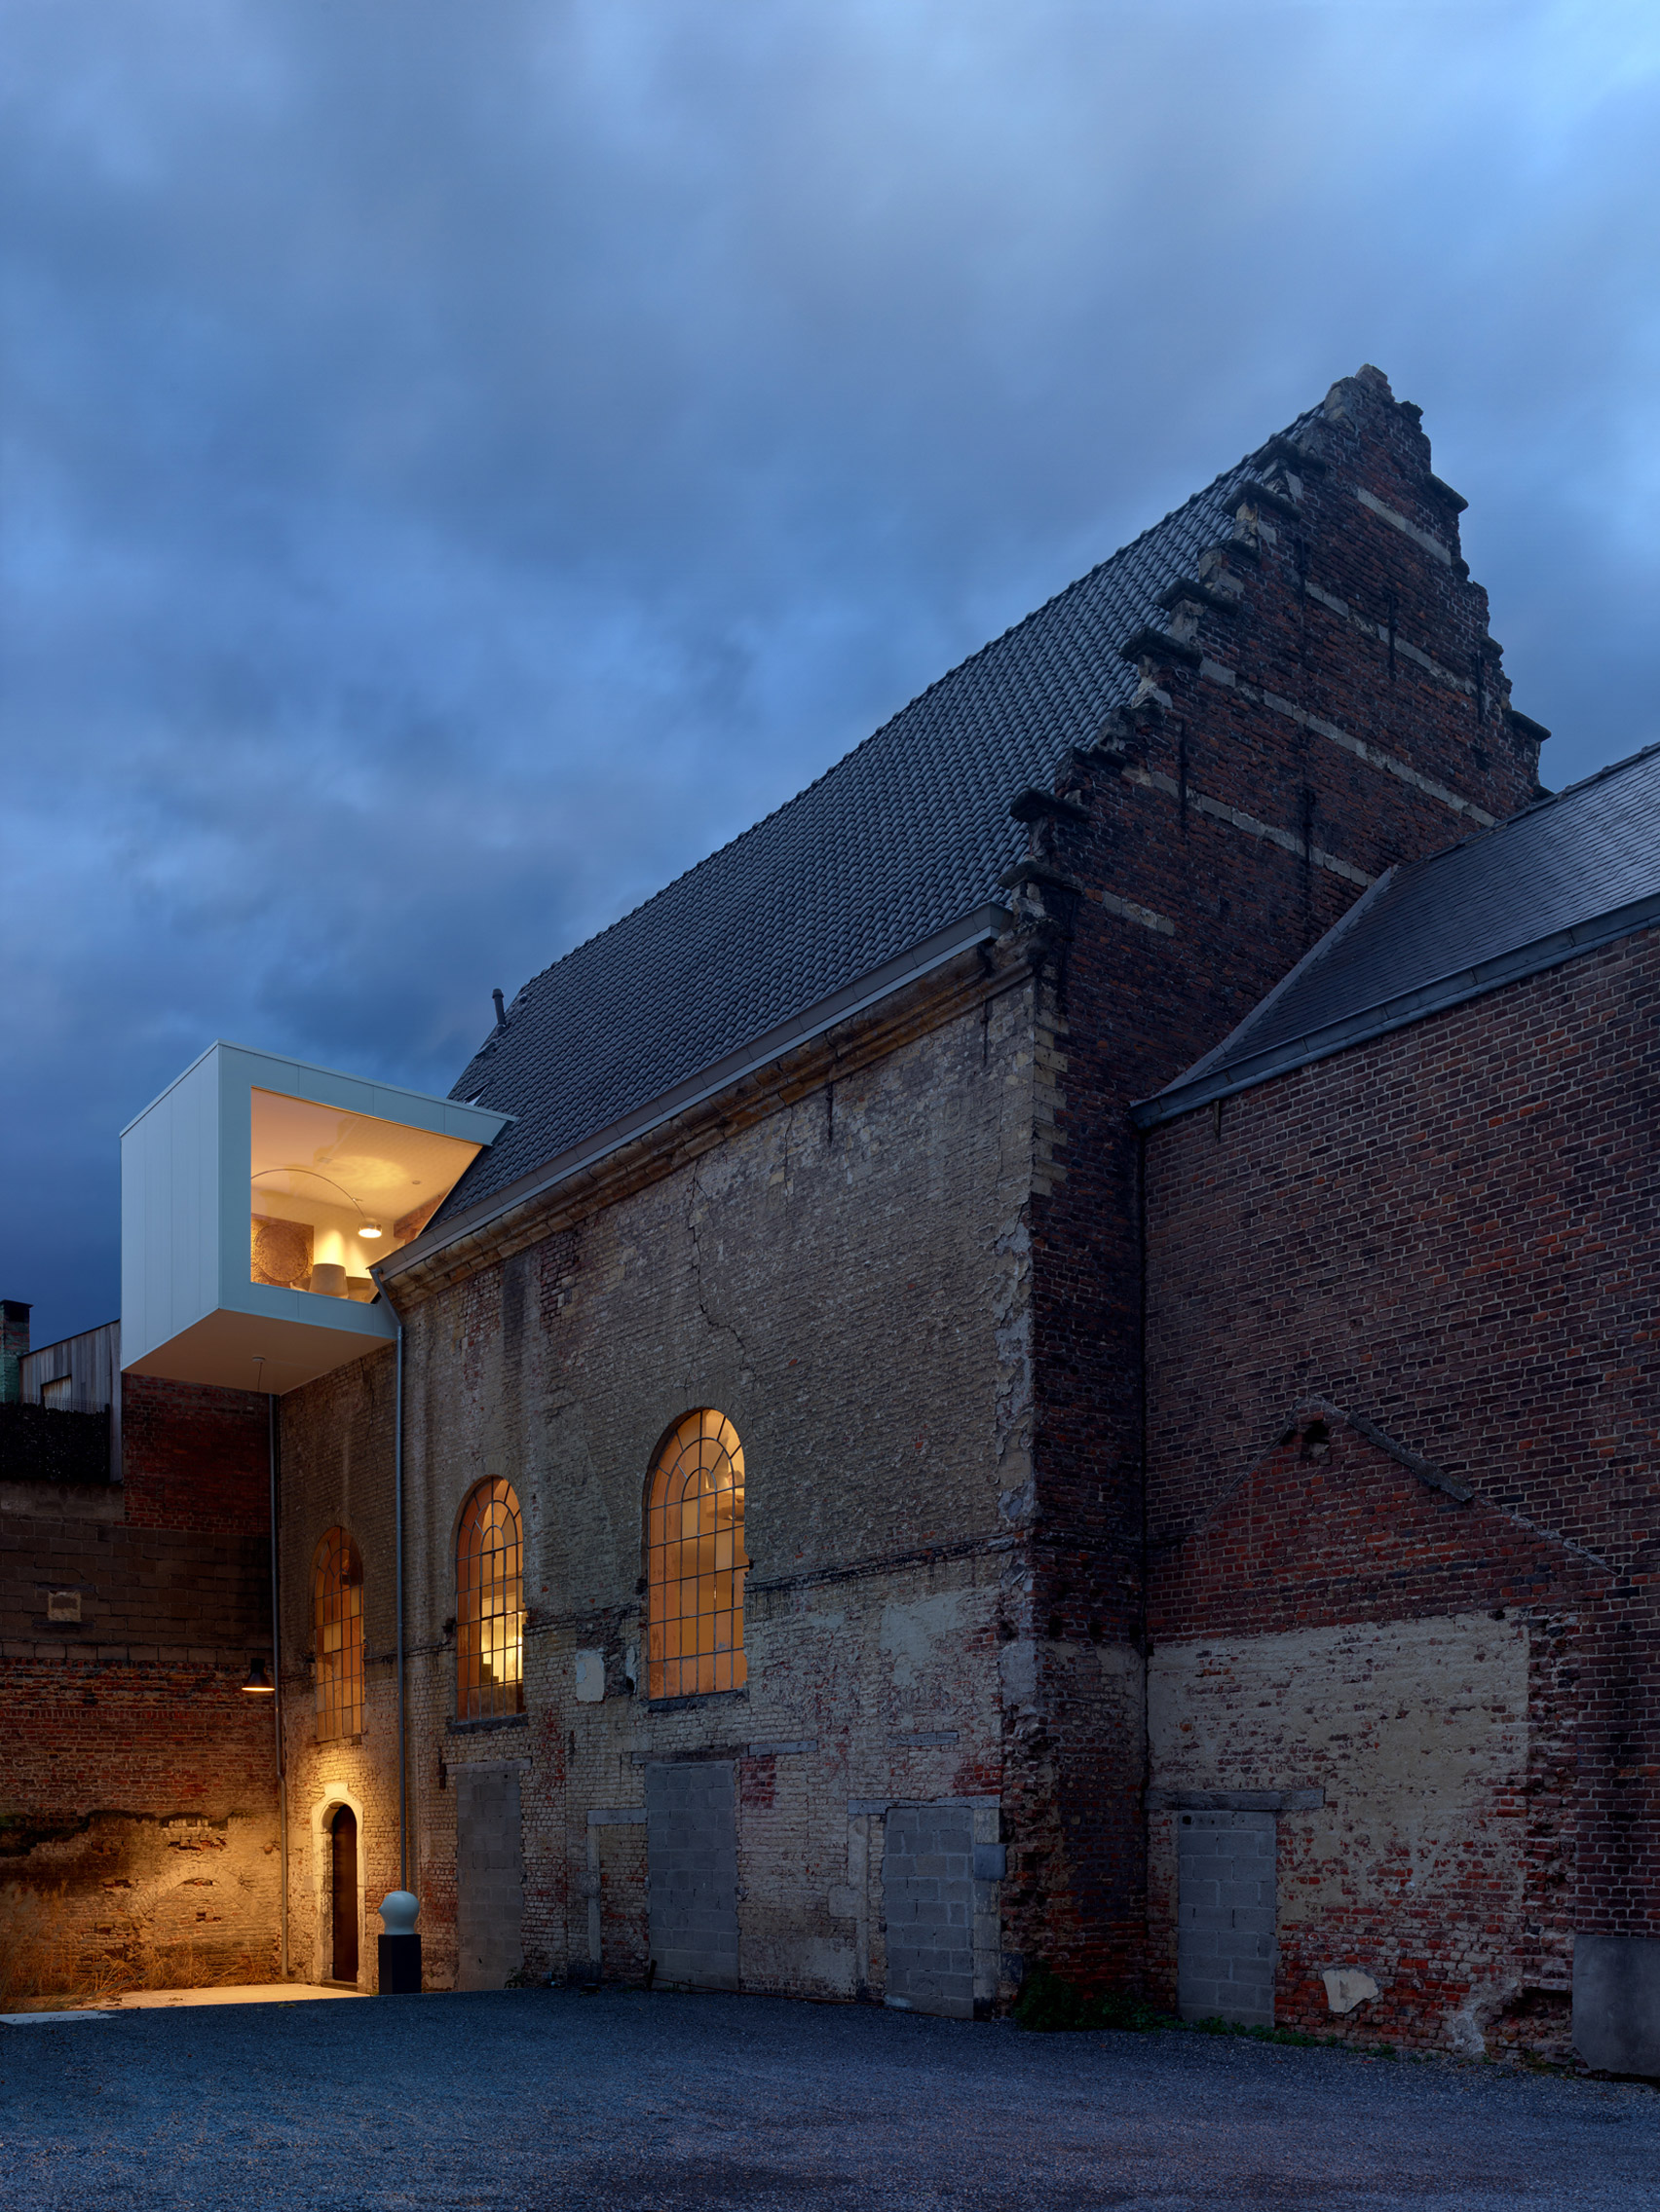 Klaarchitectuur inserts new architecture studio inside dilapidated Belgian chapel